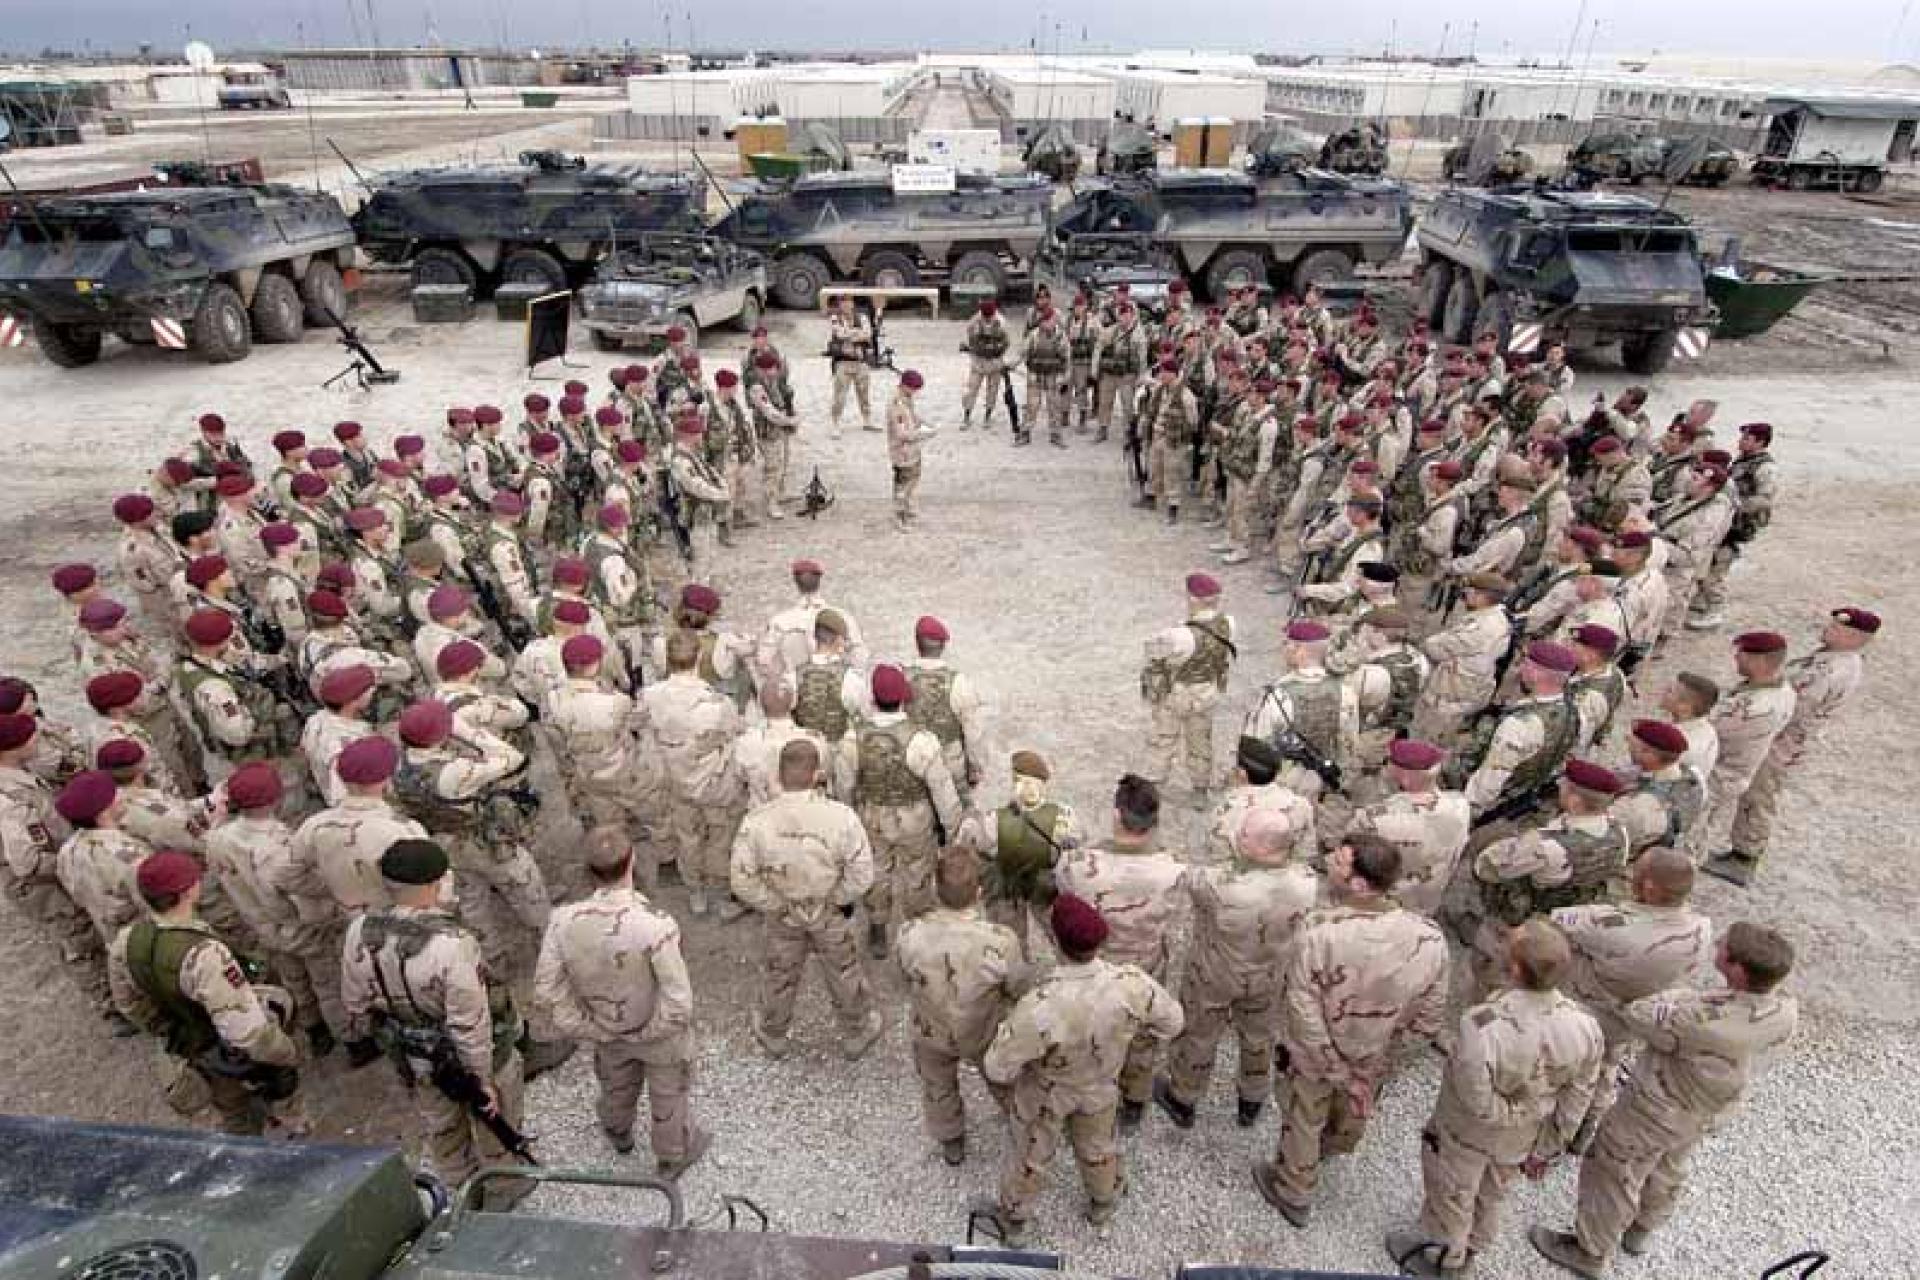 Militairen met rode baretten staan rondom opgesteld, op de achtergrond staan militaire voertuigen